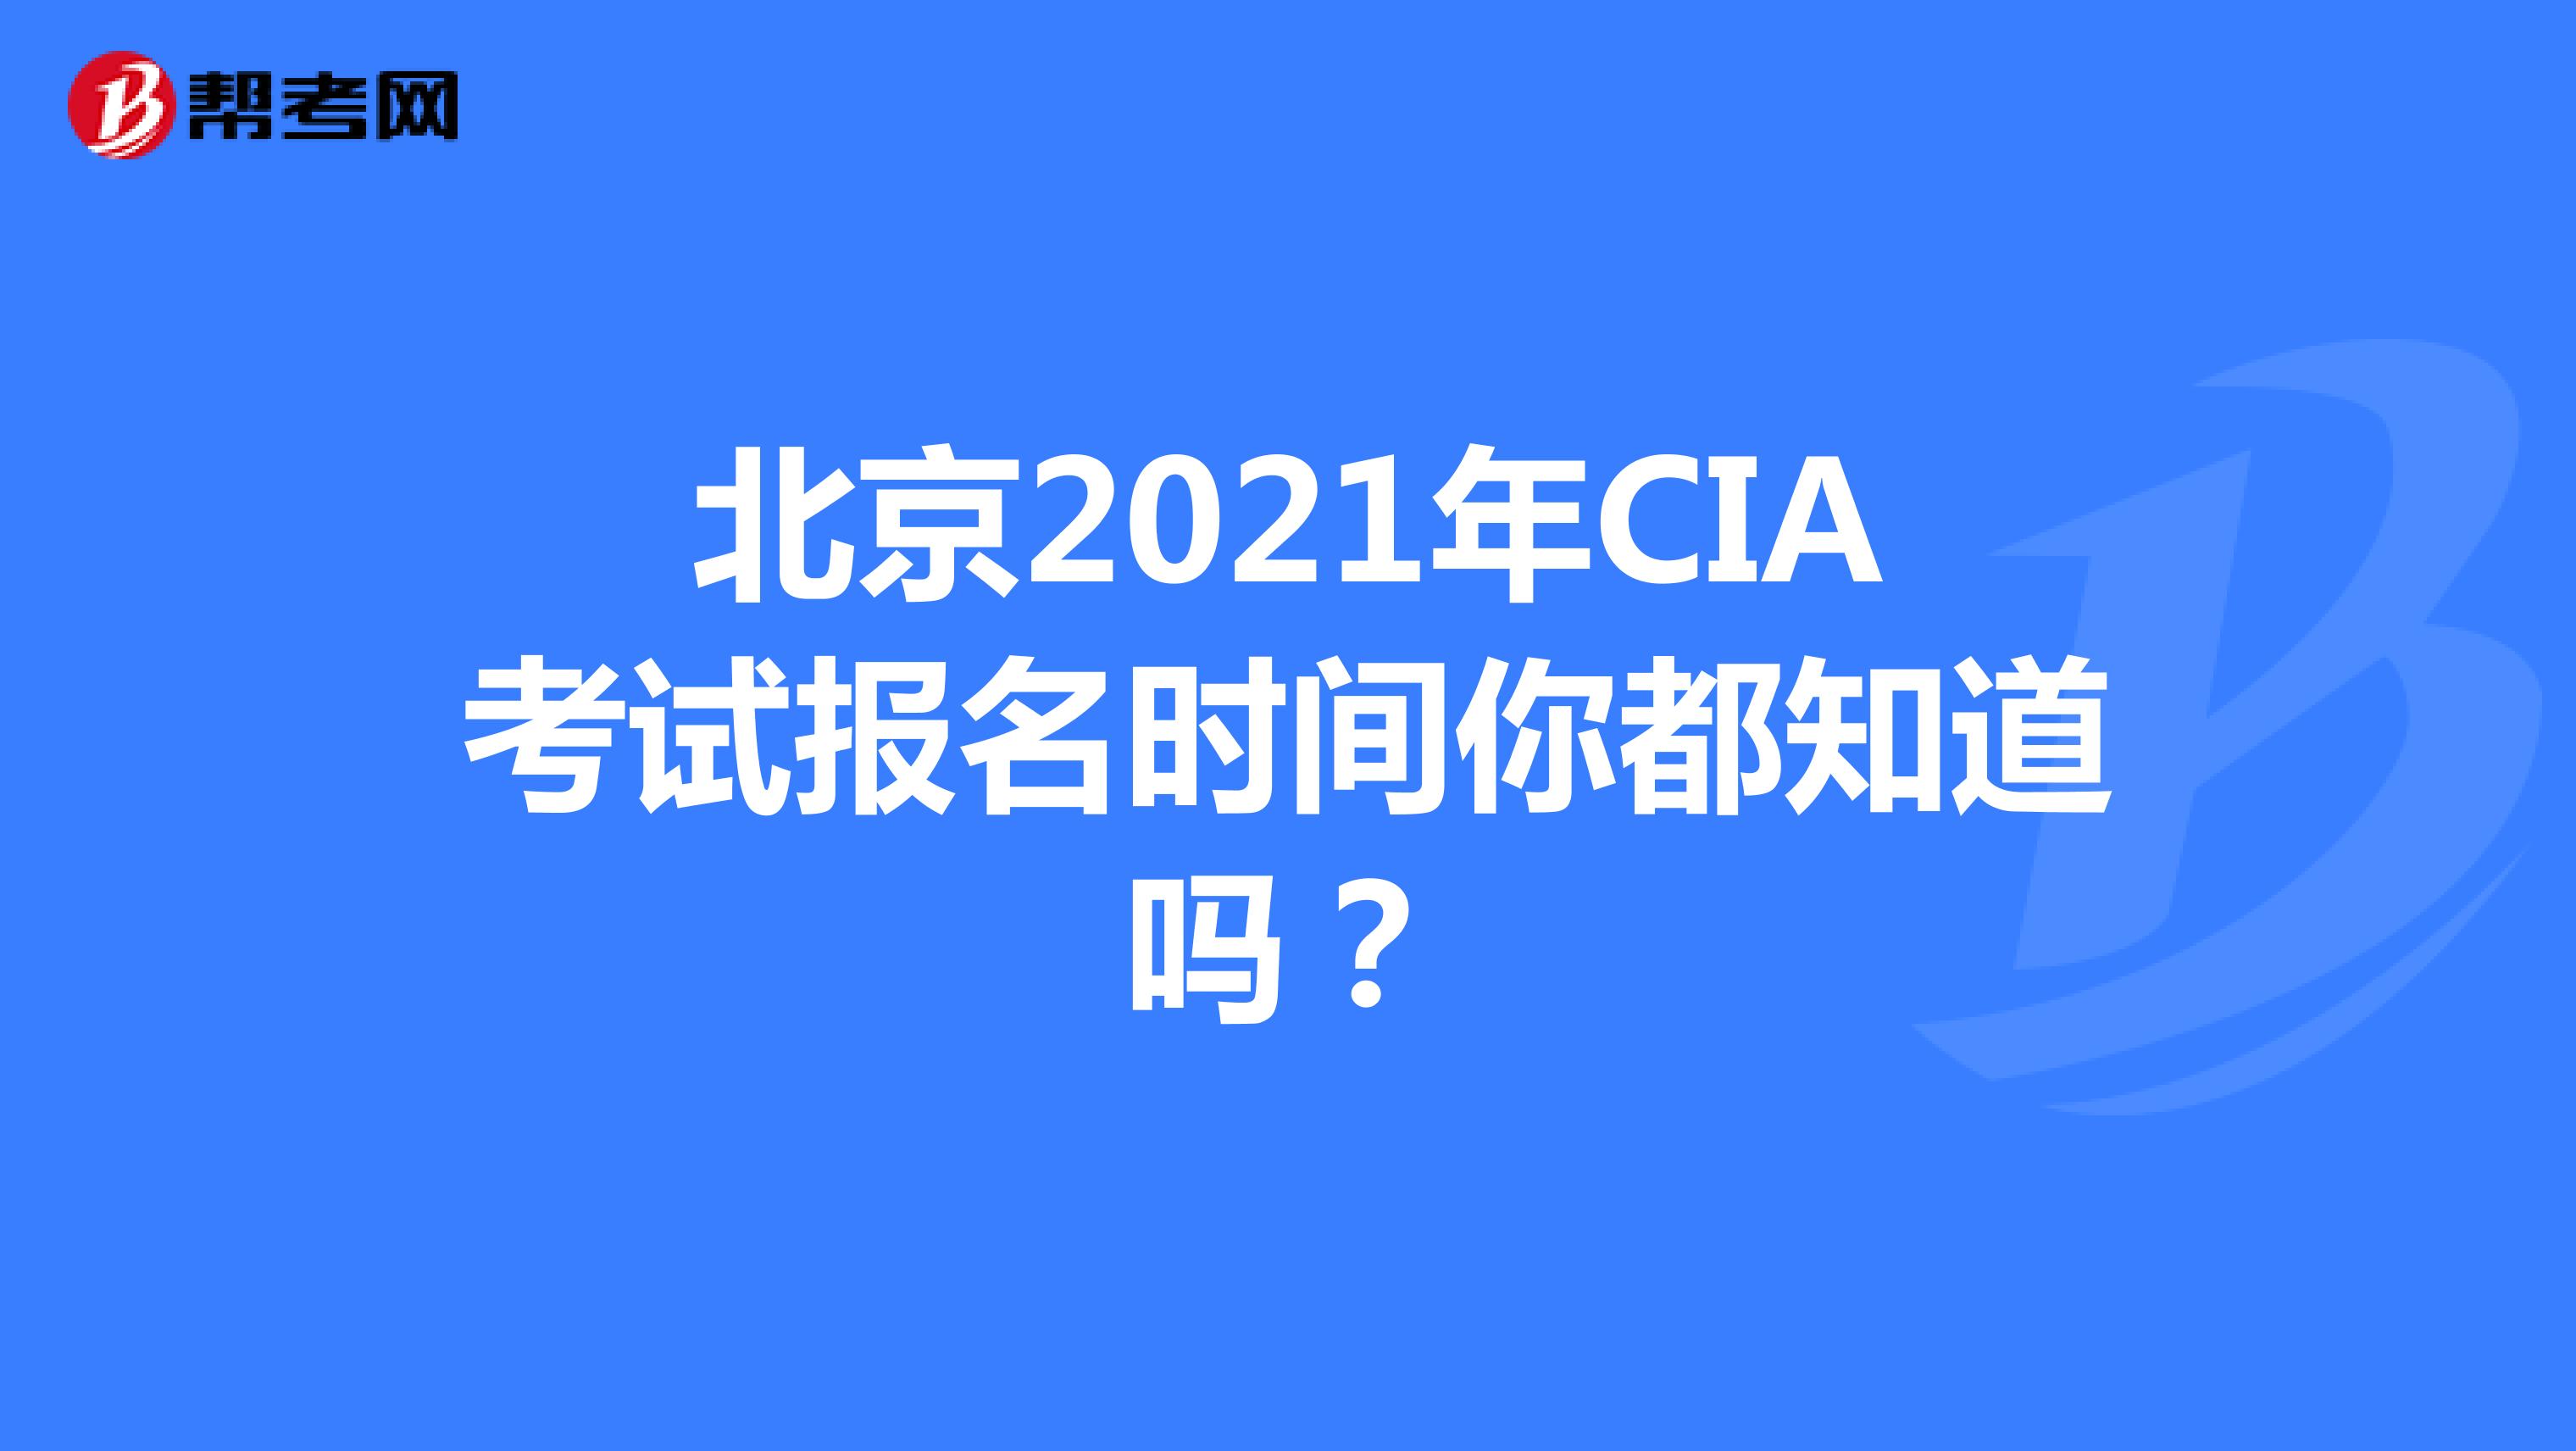 北京2021年CIA考试报名时间你都知道吗？